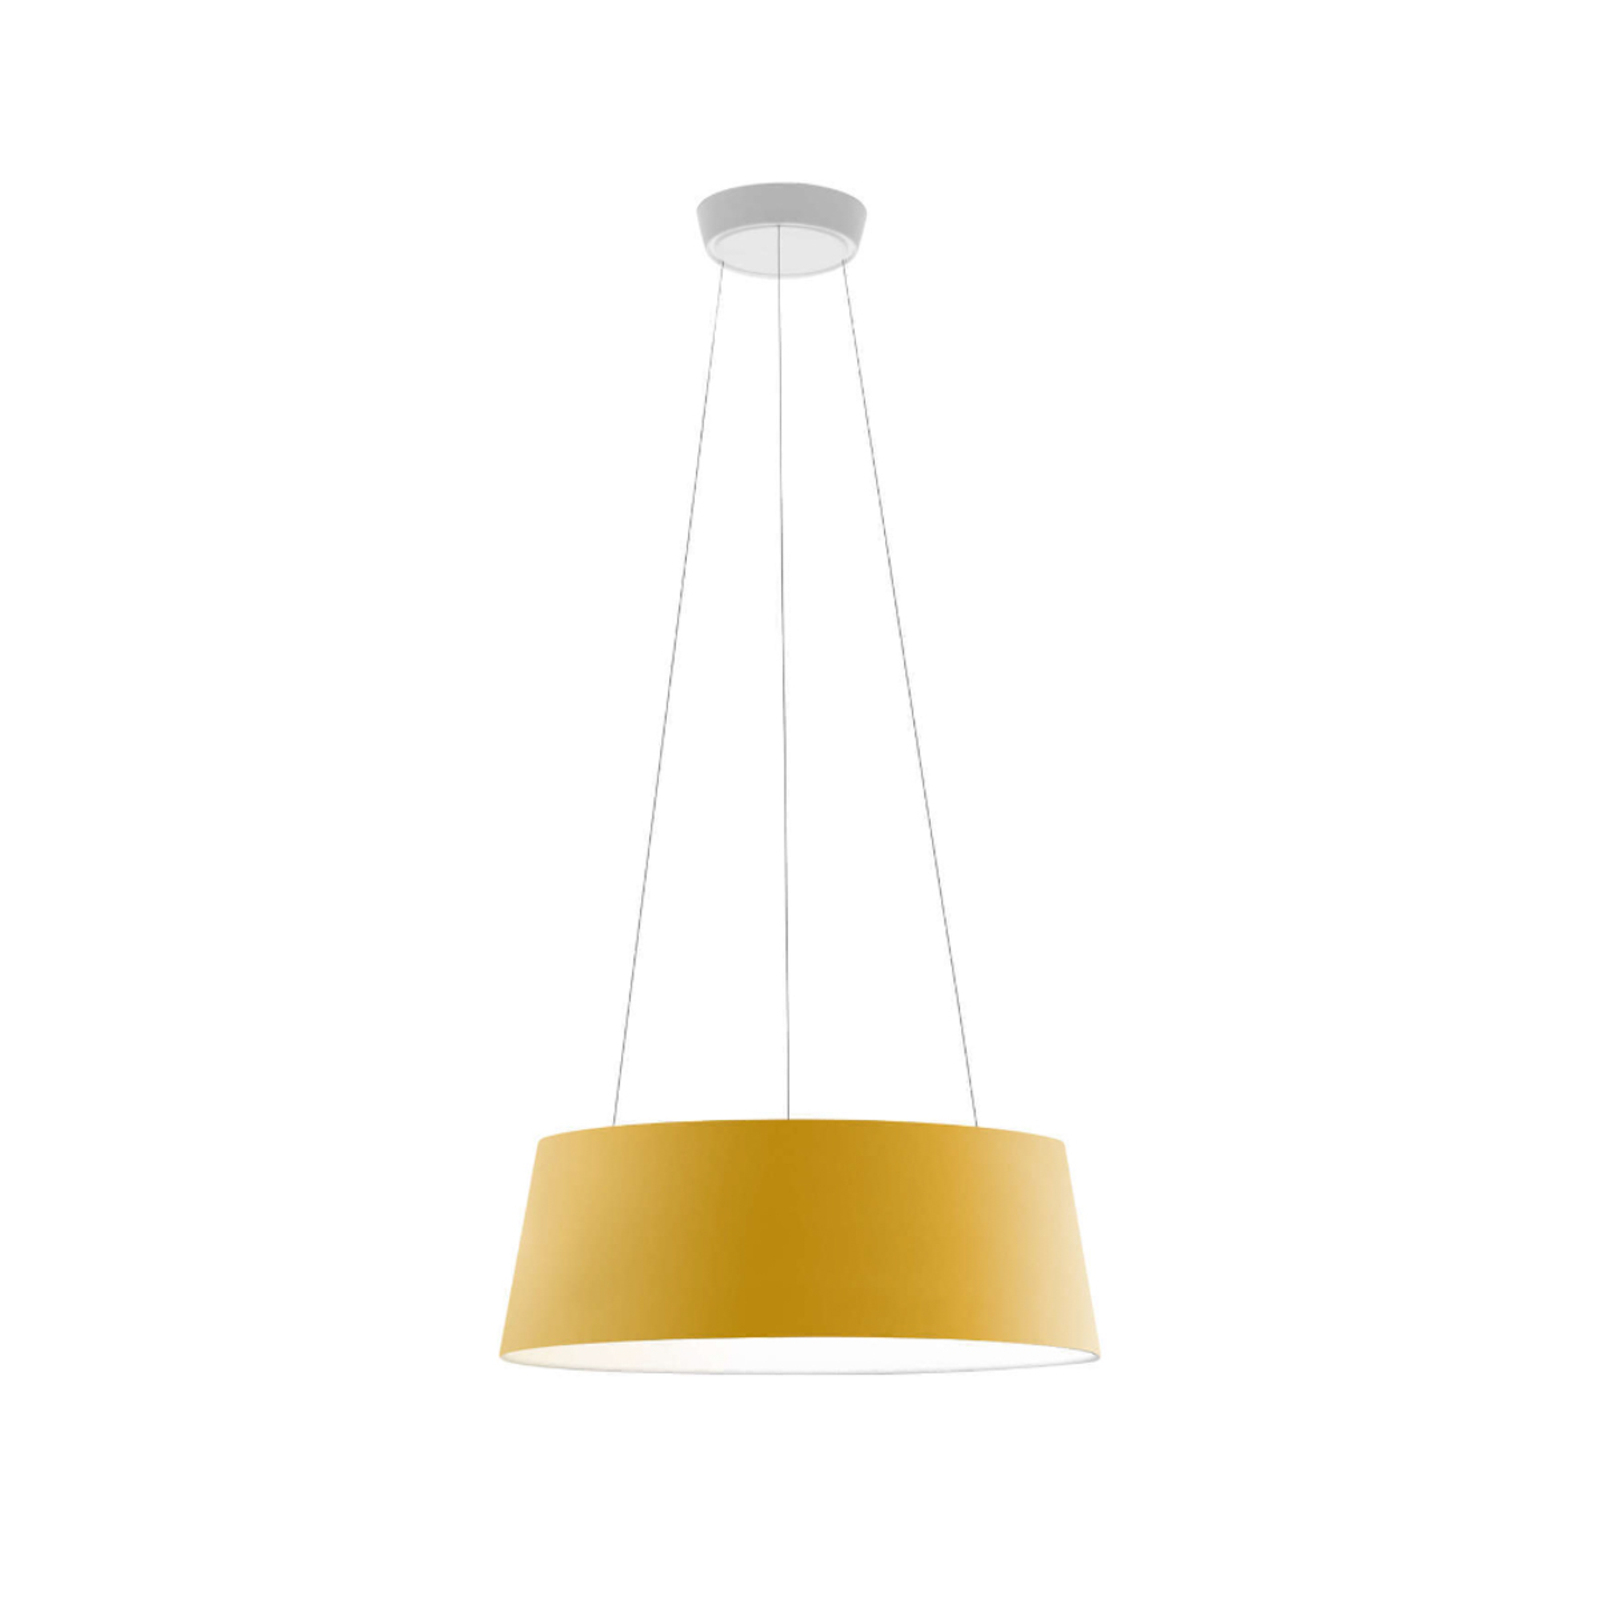 Stilnovo Oxygen LED-hänglampa, gul, Ø 56 cm